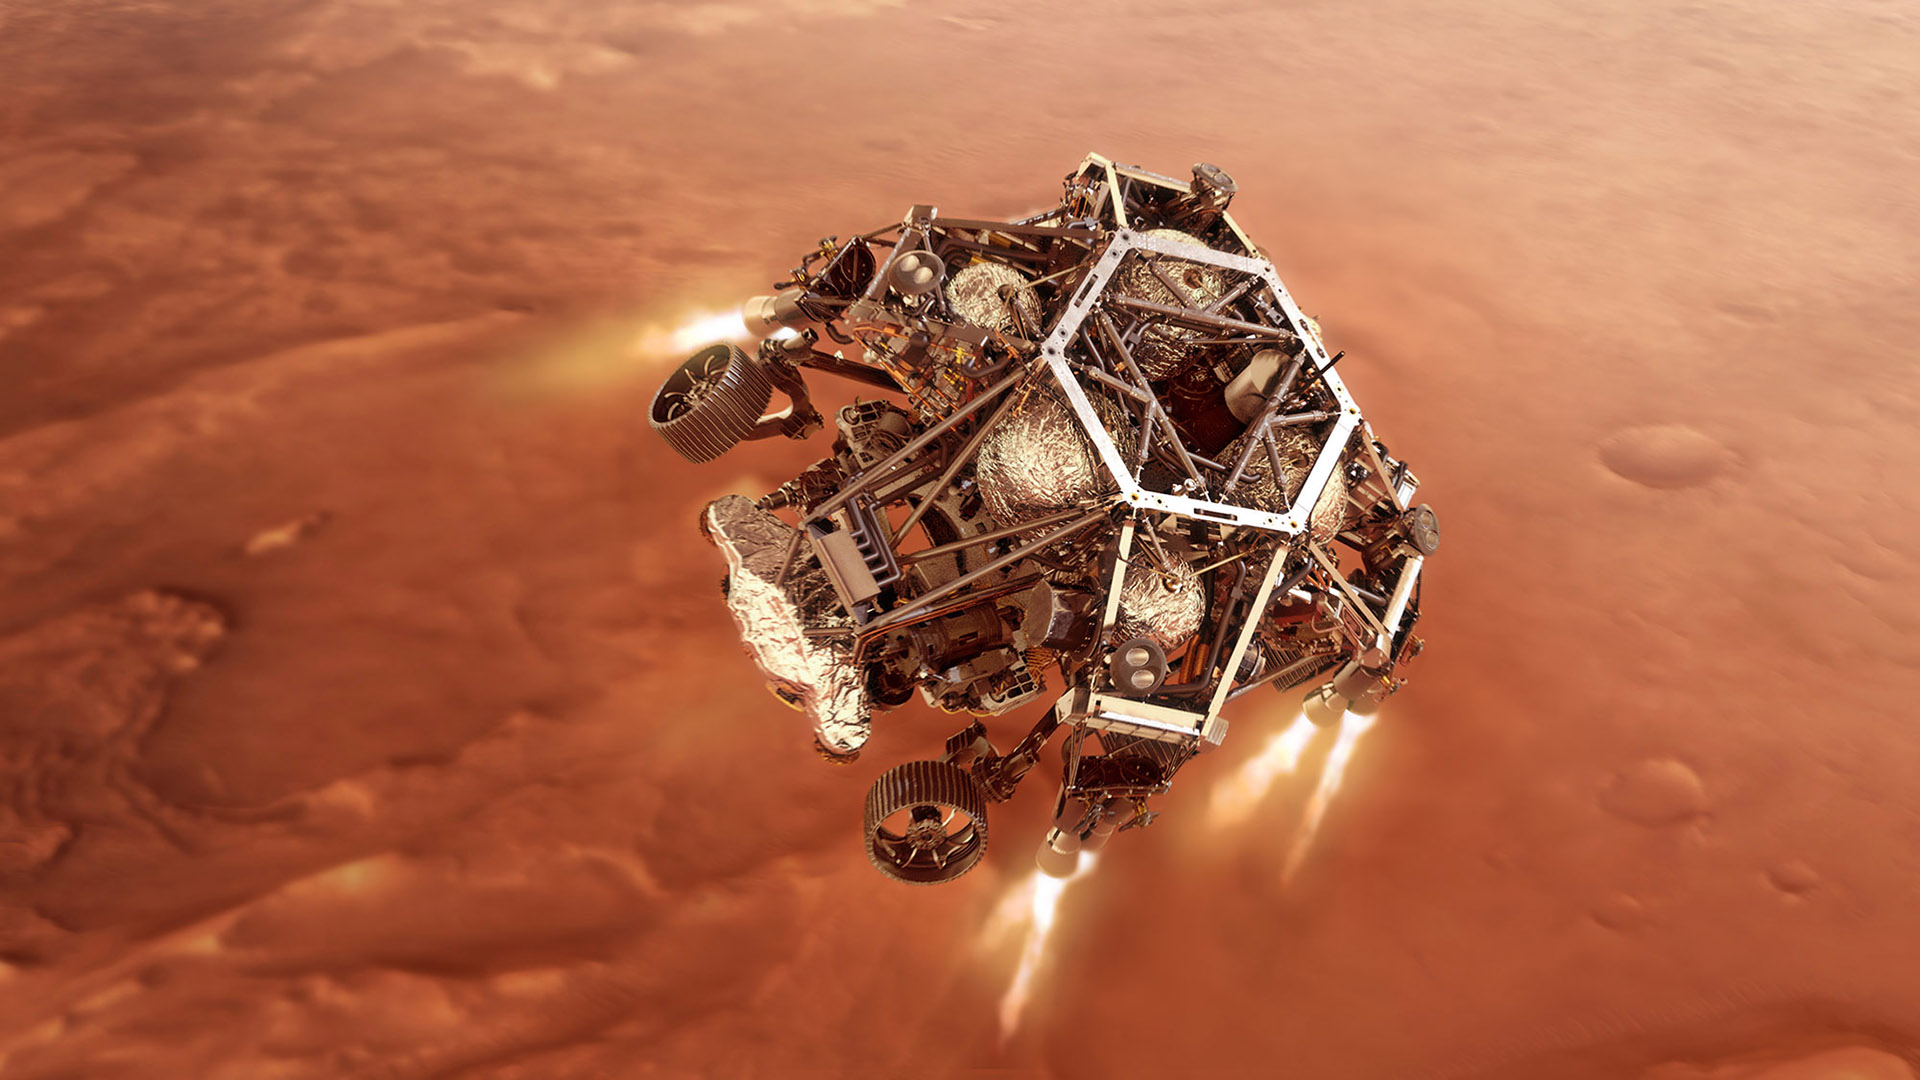 El rover Perseverance es uno de varios rover de la NASA que se encuentran actualmente en una misión de exploración de Marte.  (Ilustración fotográfica de la NASA a través de Getty Images)